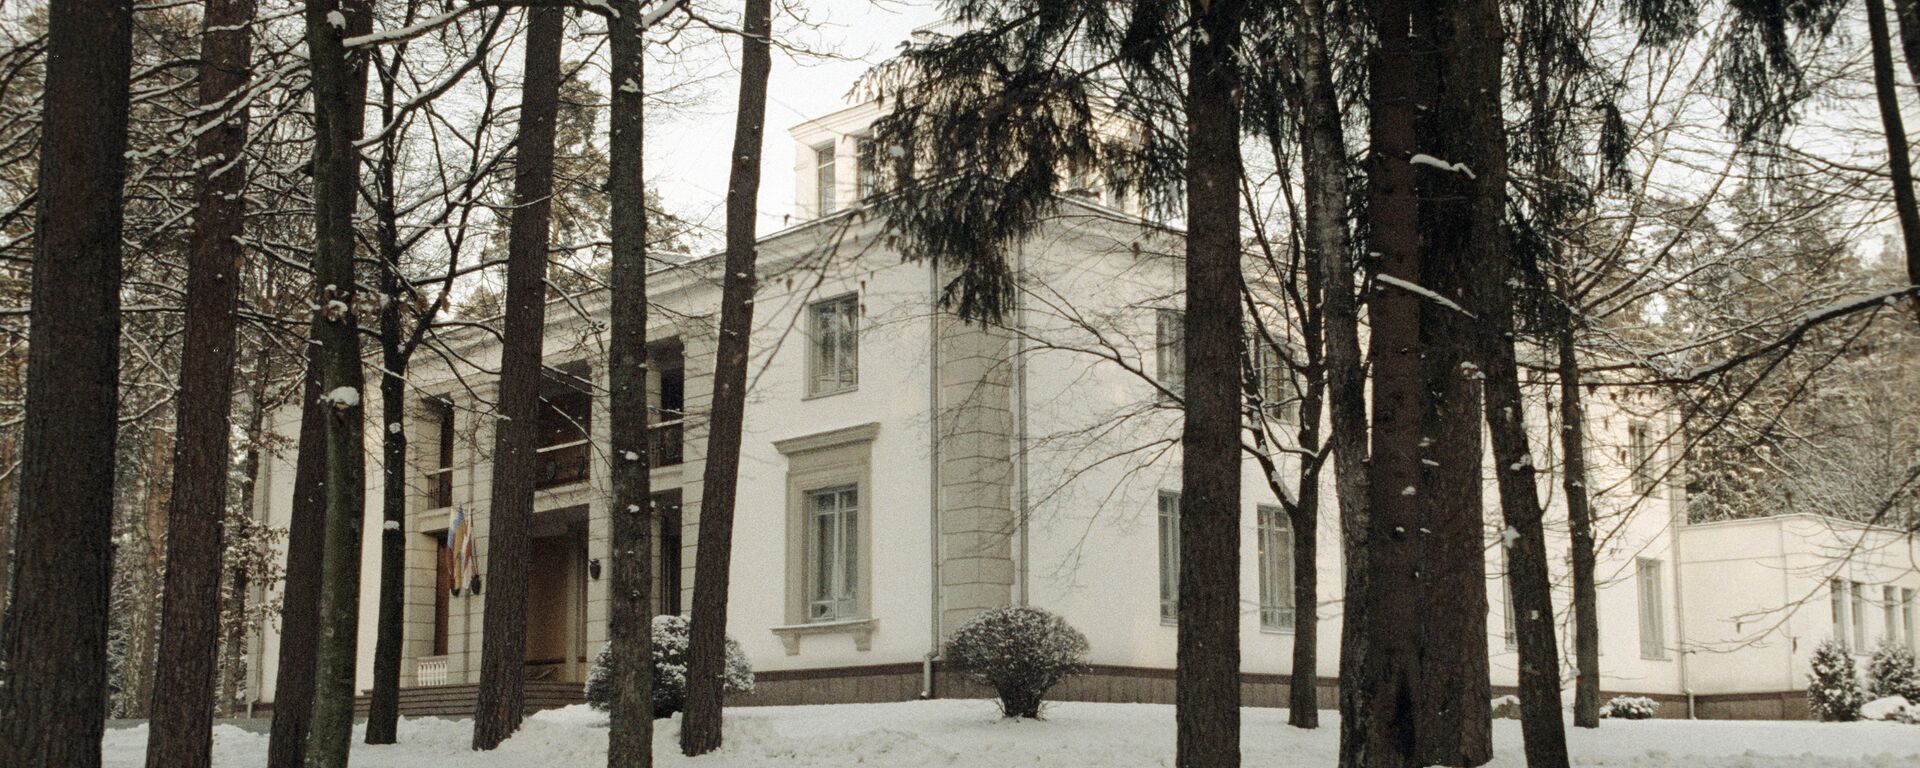 Дом, в котором были подписаны документы о создании СНГ, 8 декабря 1991 года, Беловежская Пуща, Вискули - Sputnik Беларусь, 1920, 08.12.2021